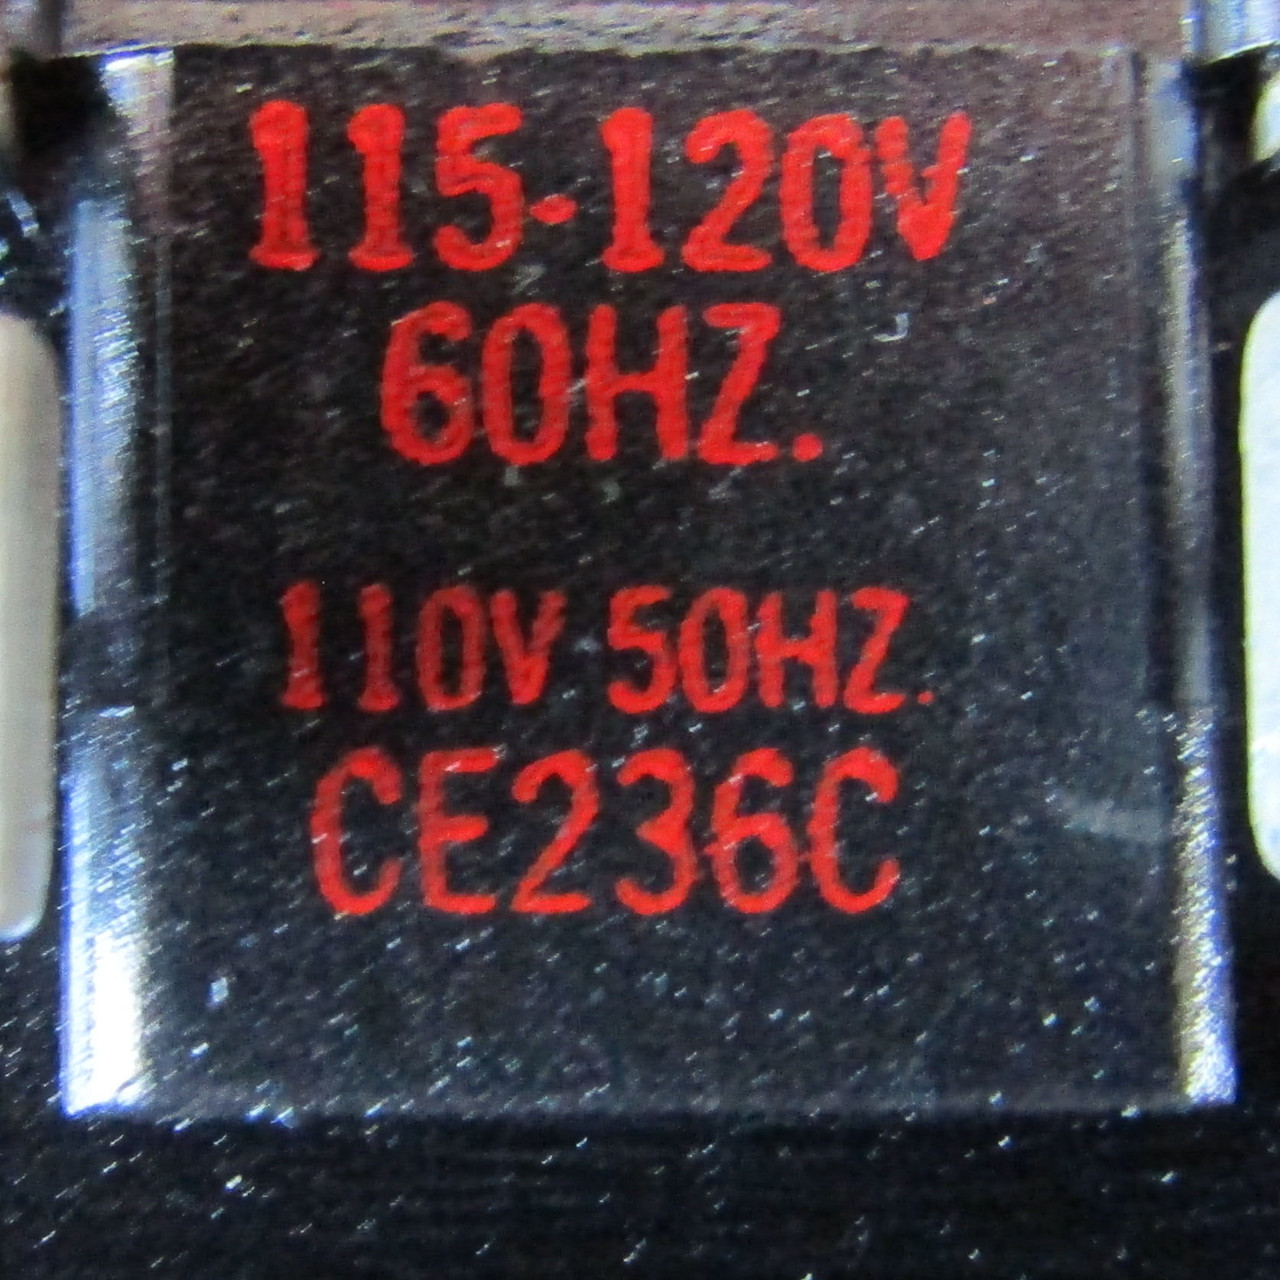 Allen-Bradley 520VF-EOD Size 4 Magnetic Starter 3PH 135A 120V Coil - Used